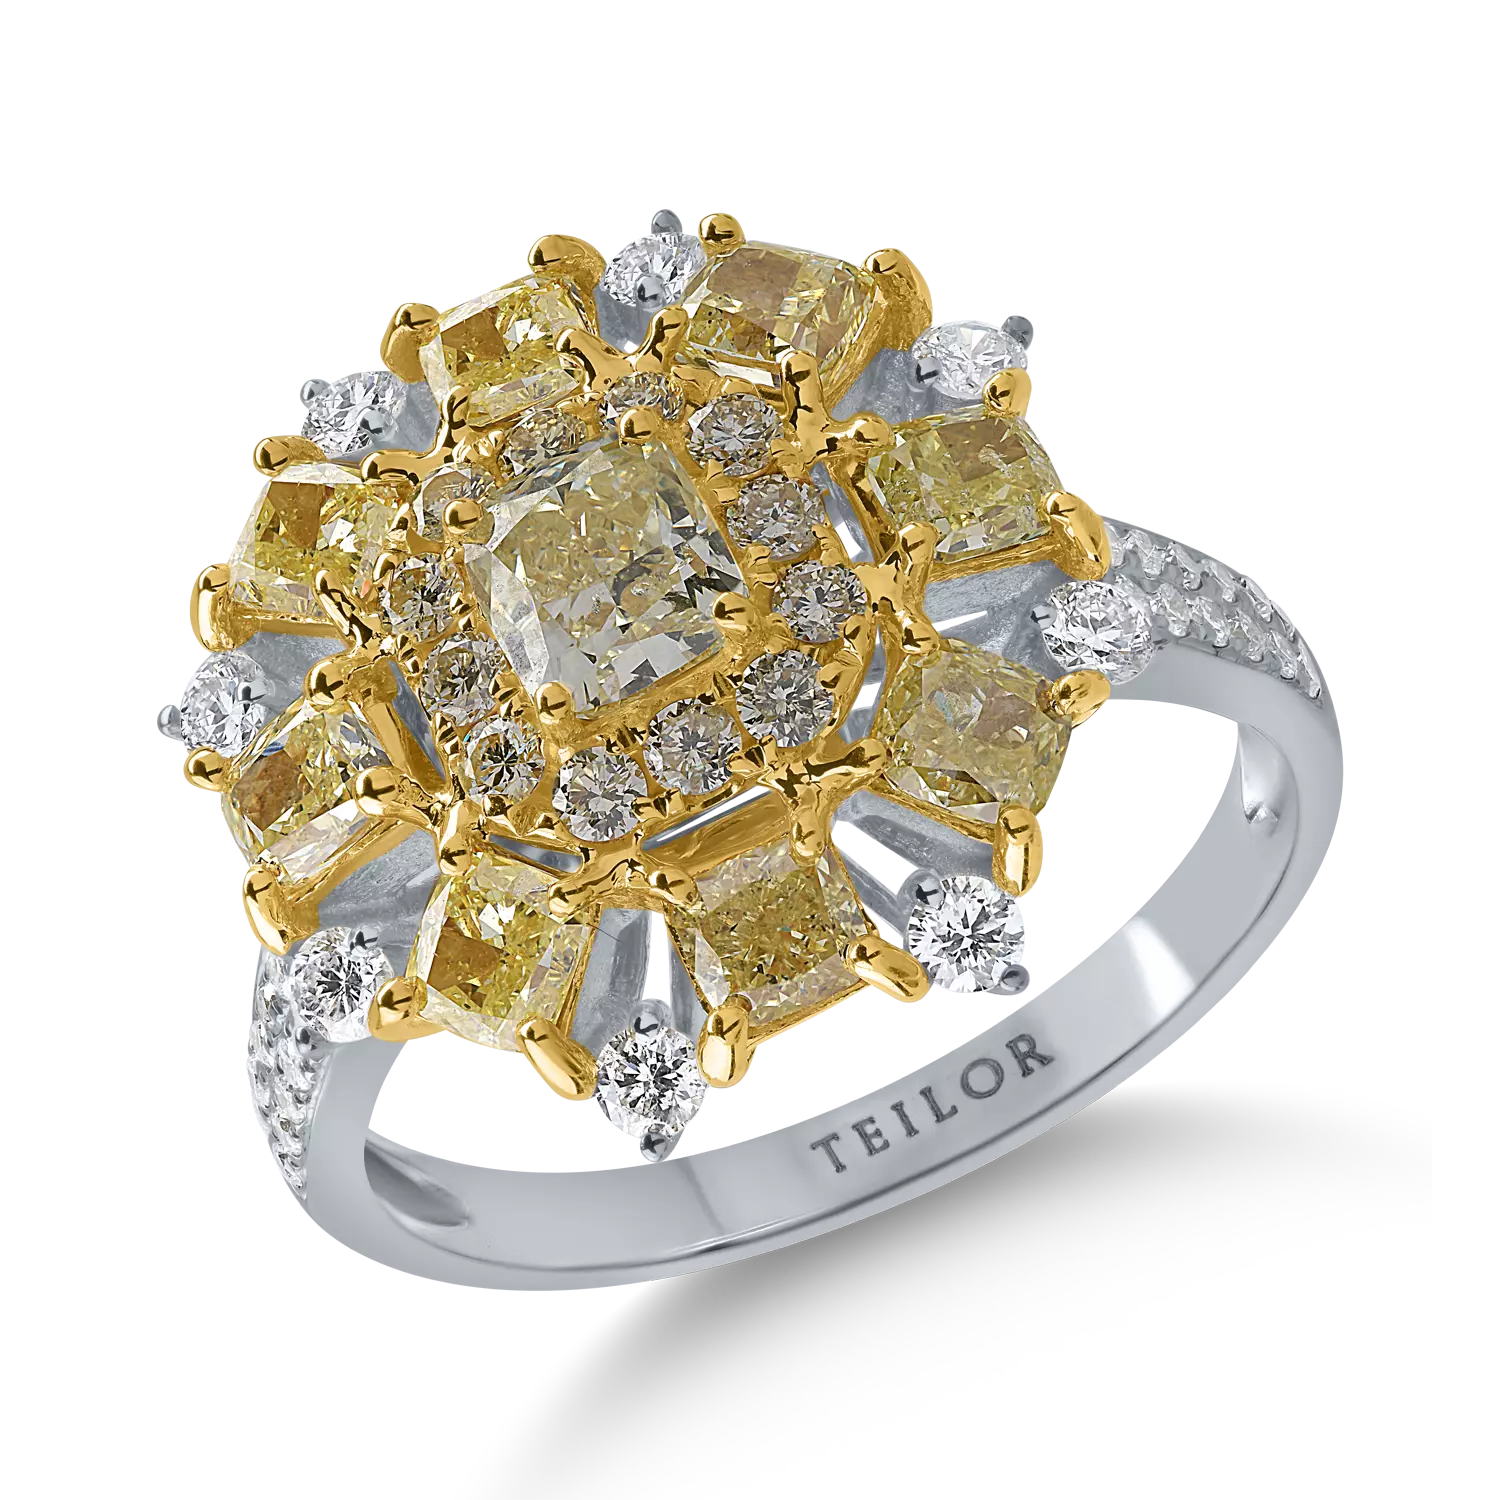 Inel din aur alb-galben cu diamante galbene de 2.21ct si diamante transparente de 0.39ct